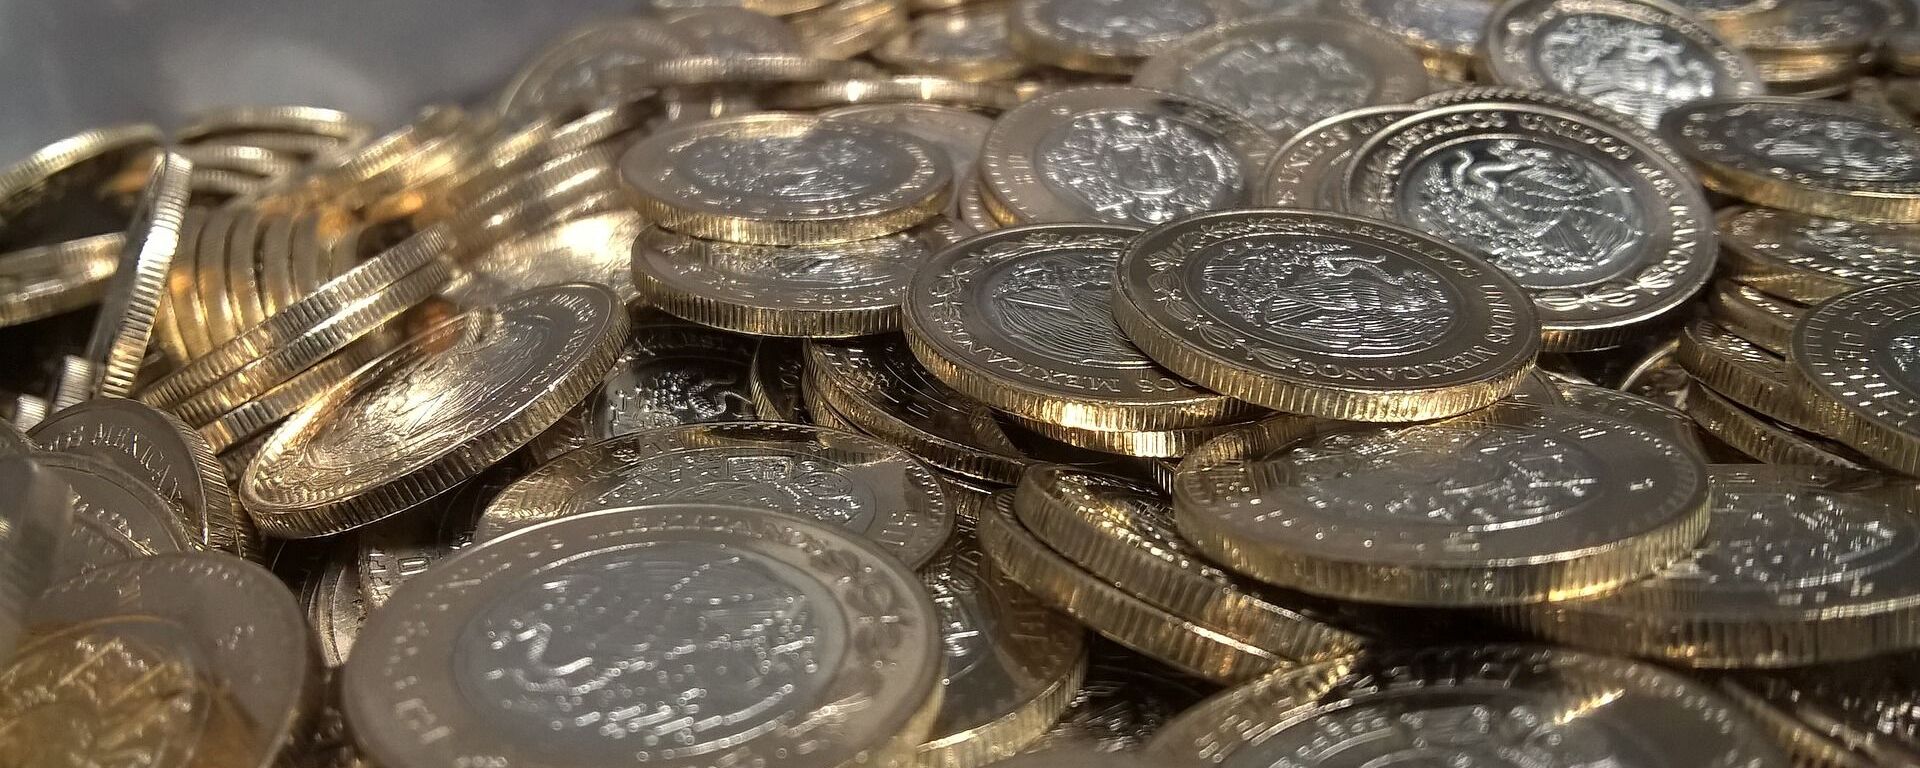 Pesos mexicanos. Monedas. Imagen referencial - Sputnik Mundo, 1920, 24.03.2022